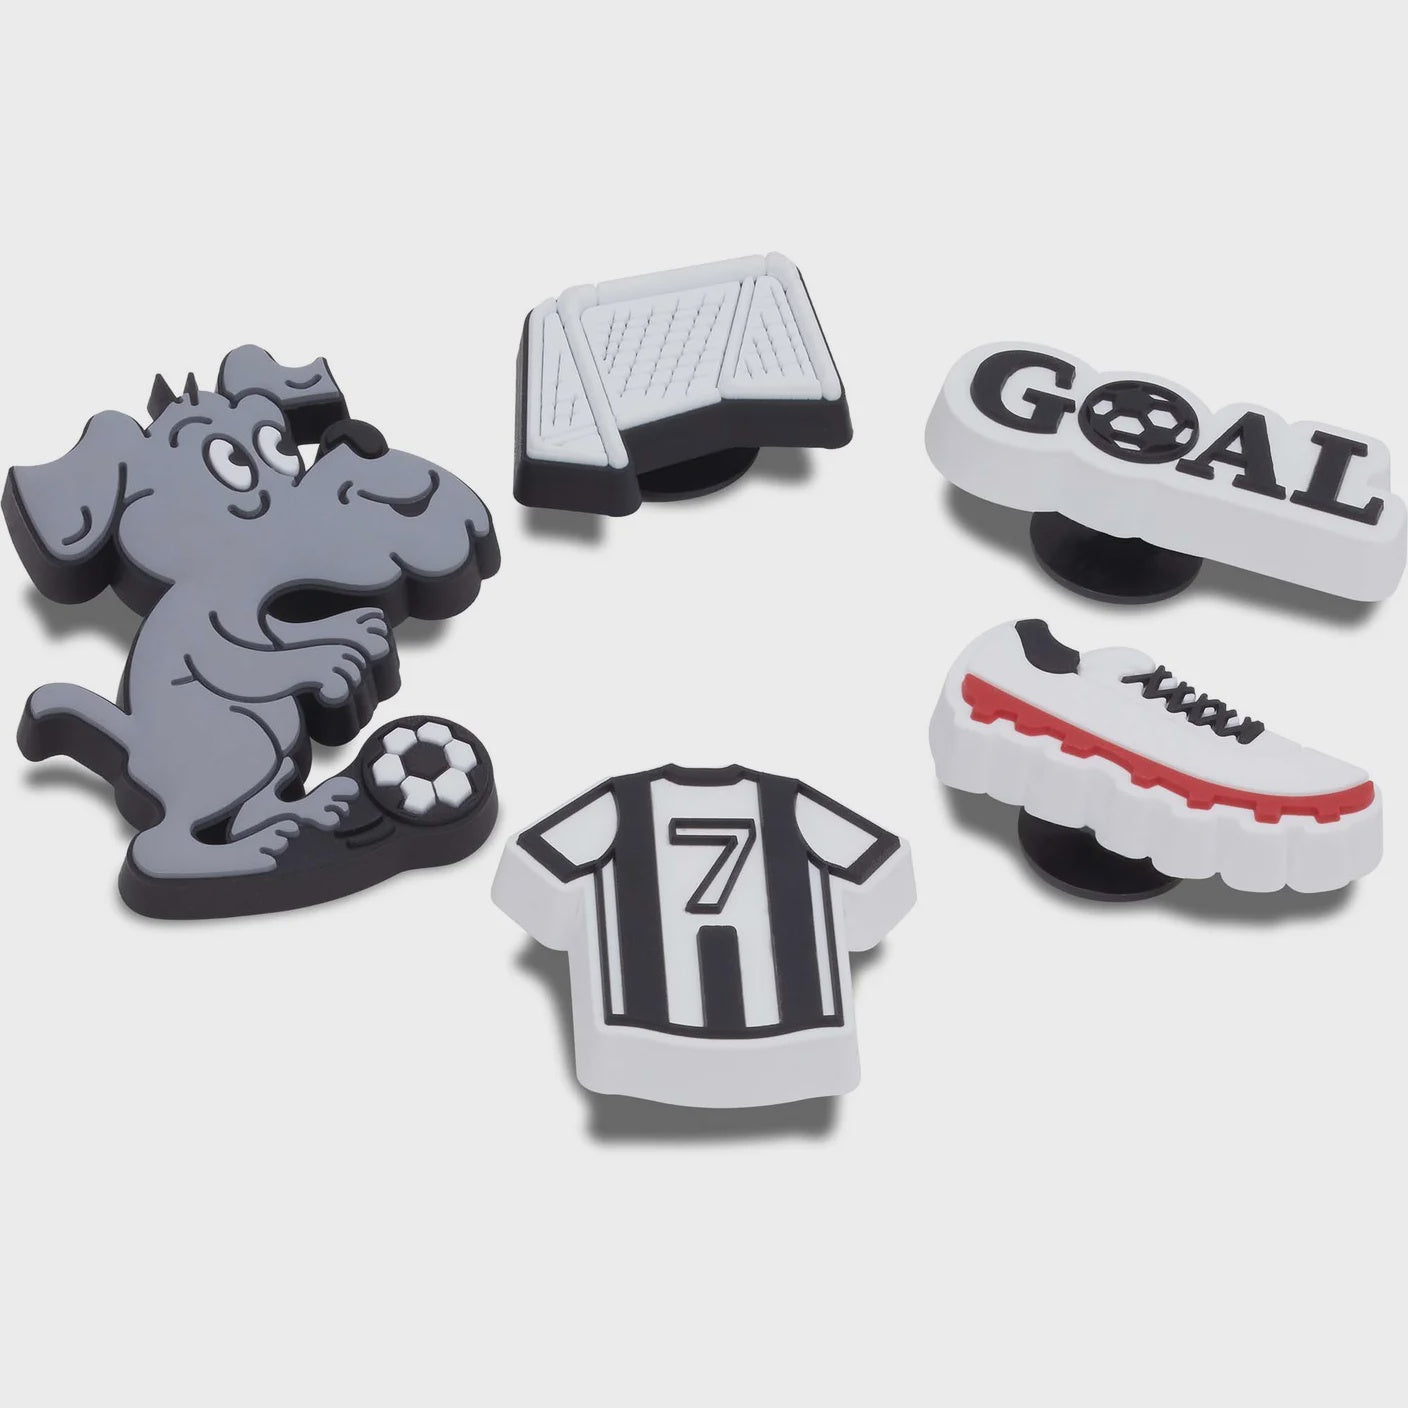 Jibbitz Soccer Goal - 5 pack